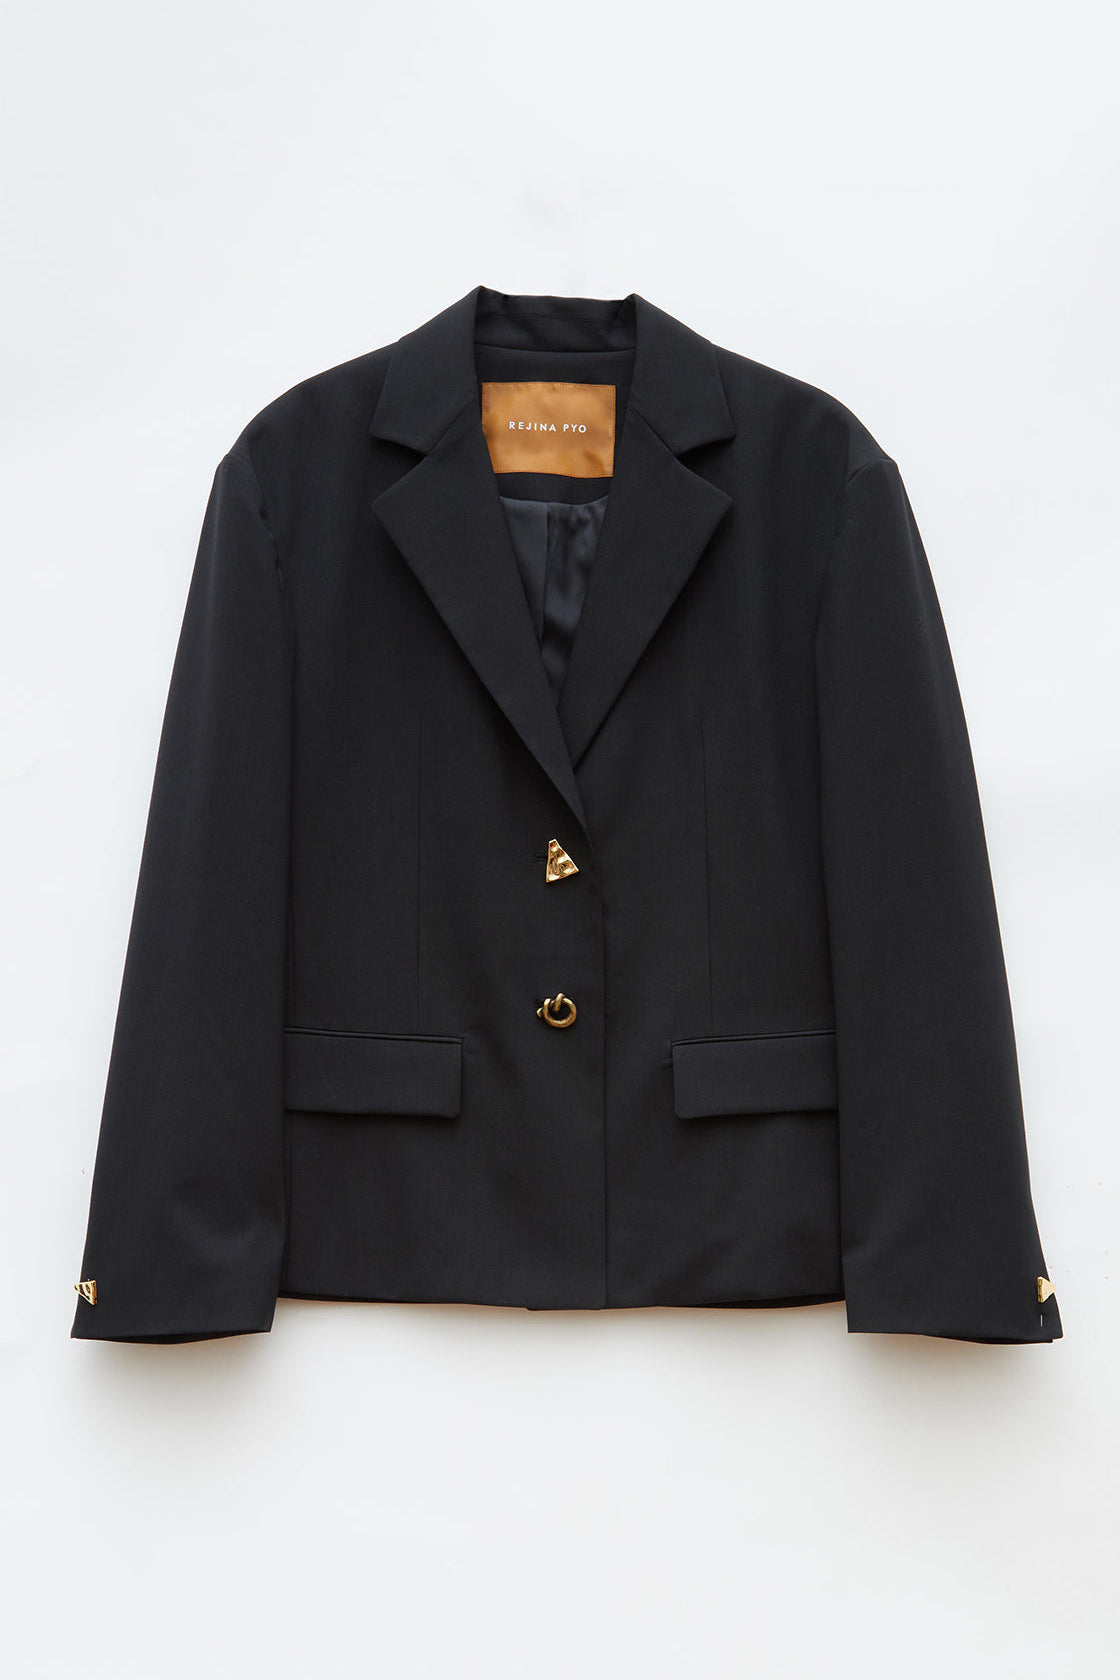 Karyn Jacket in Black Wool Blend Suiting